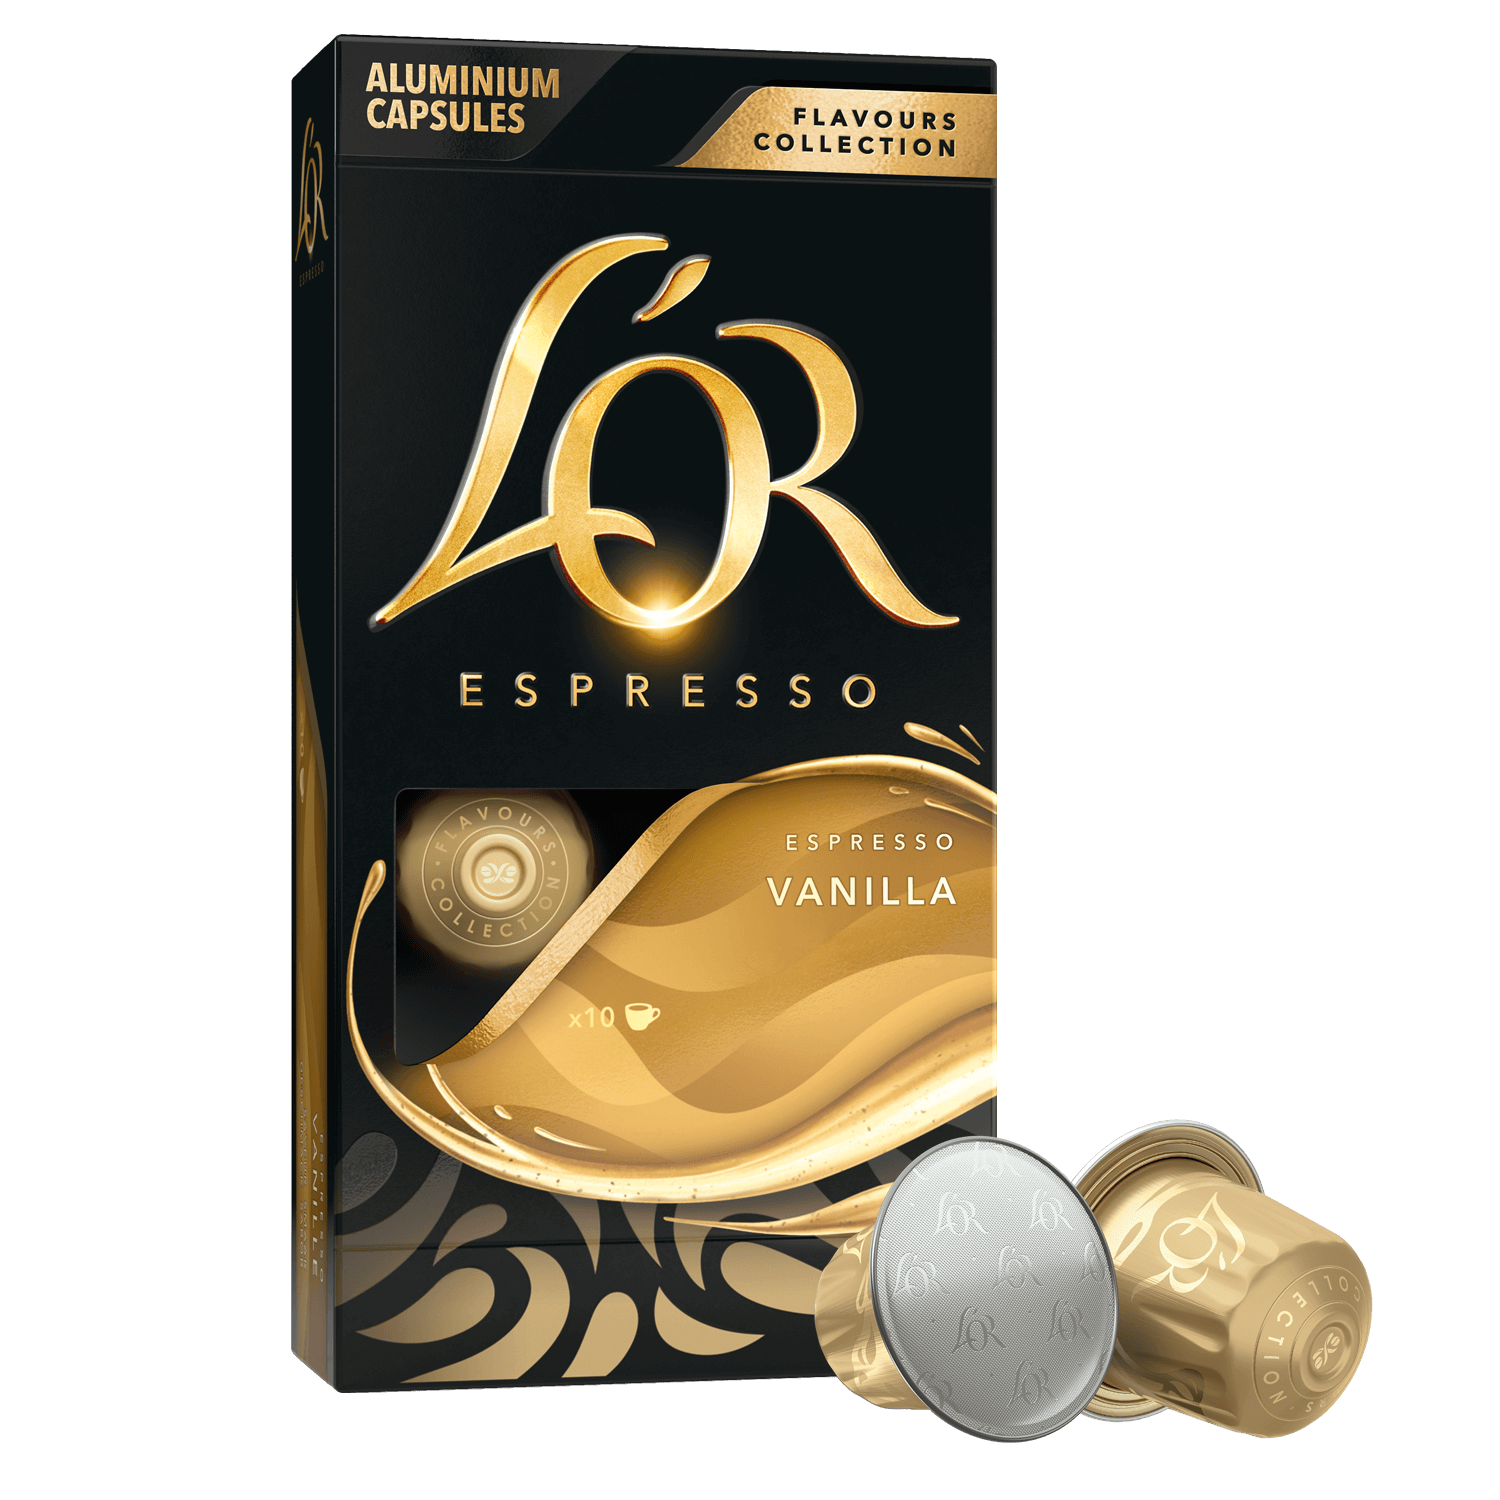 Toutes les promotions de L'Or Espresso - Trouvez et découvrez la promotion  de L'Or Espresso la moins chère!